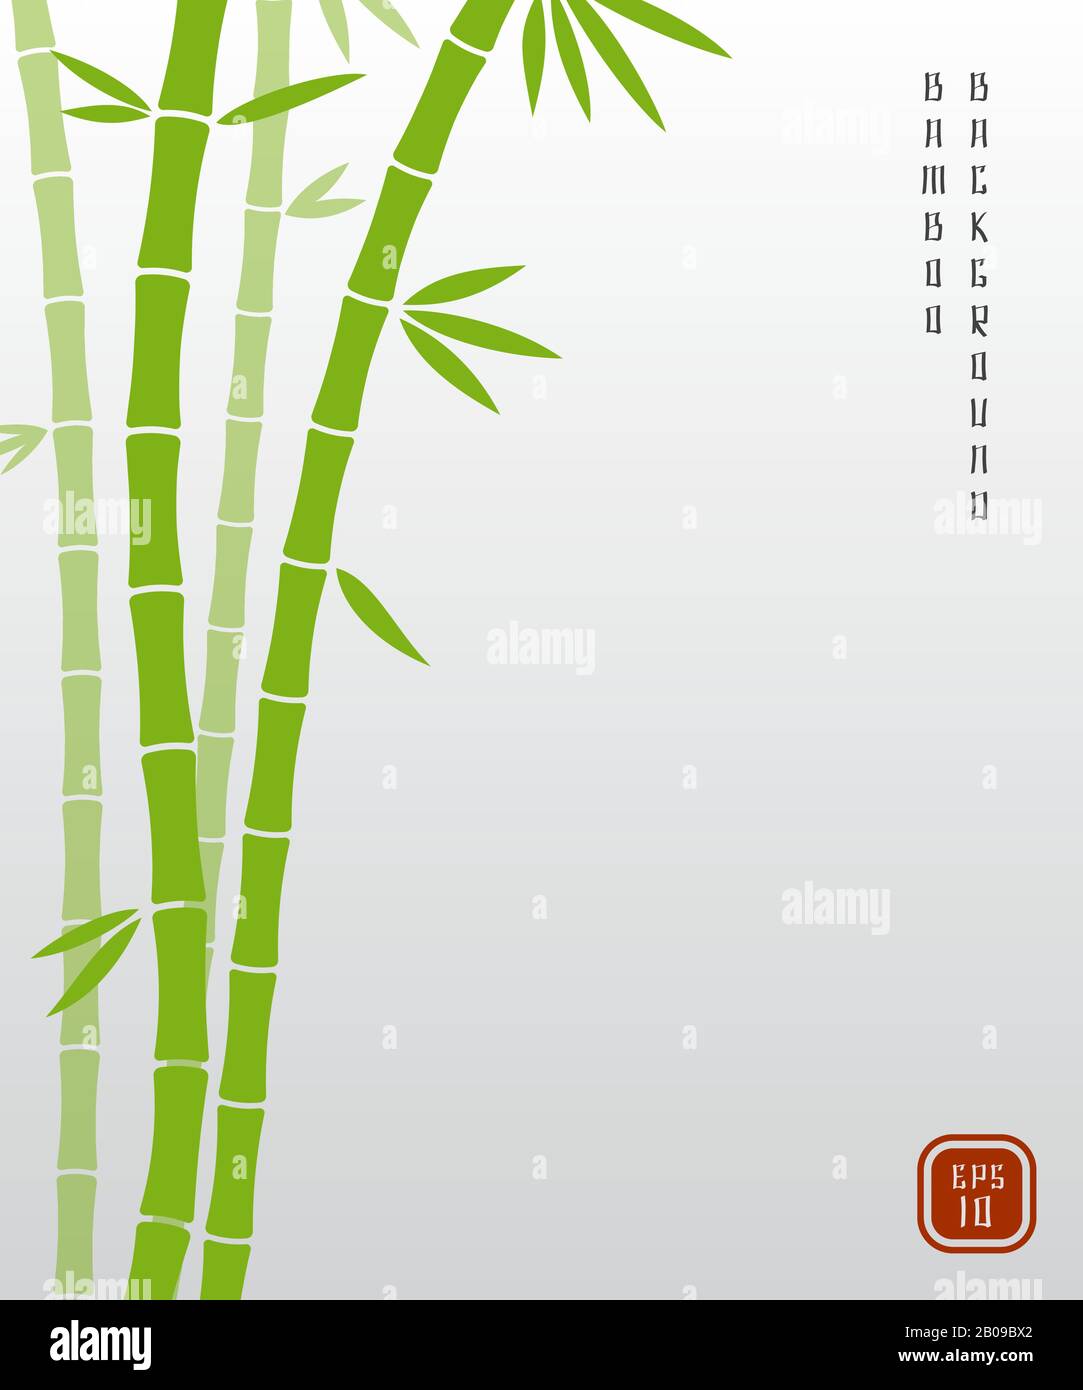 Bambou chinois ou japonais bambu asiatique vecteur arrière-plan. La nature de la plante de bambou, la tige verte exotique de l'illustration de bambou Illustration de Vecteur